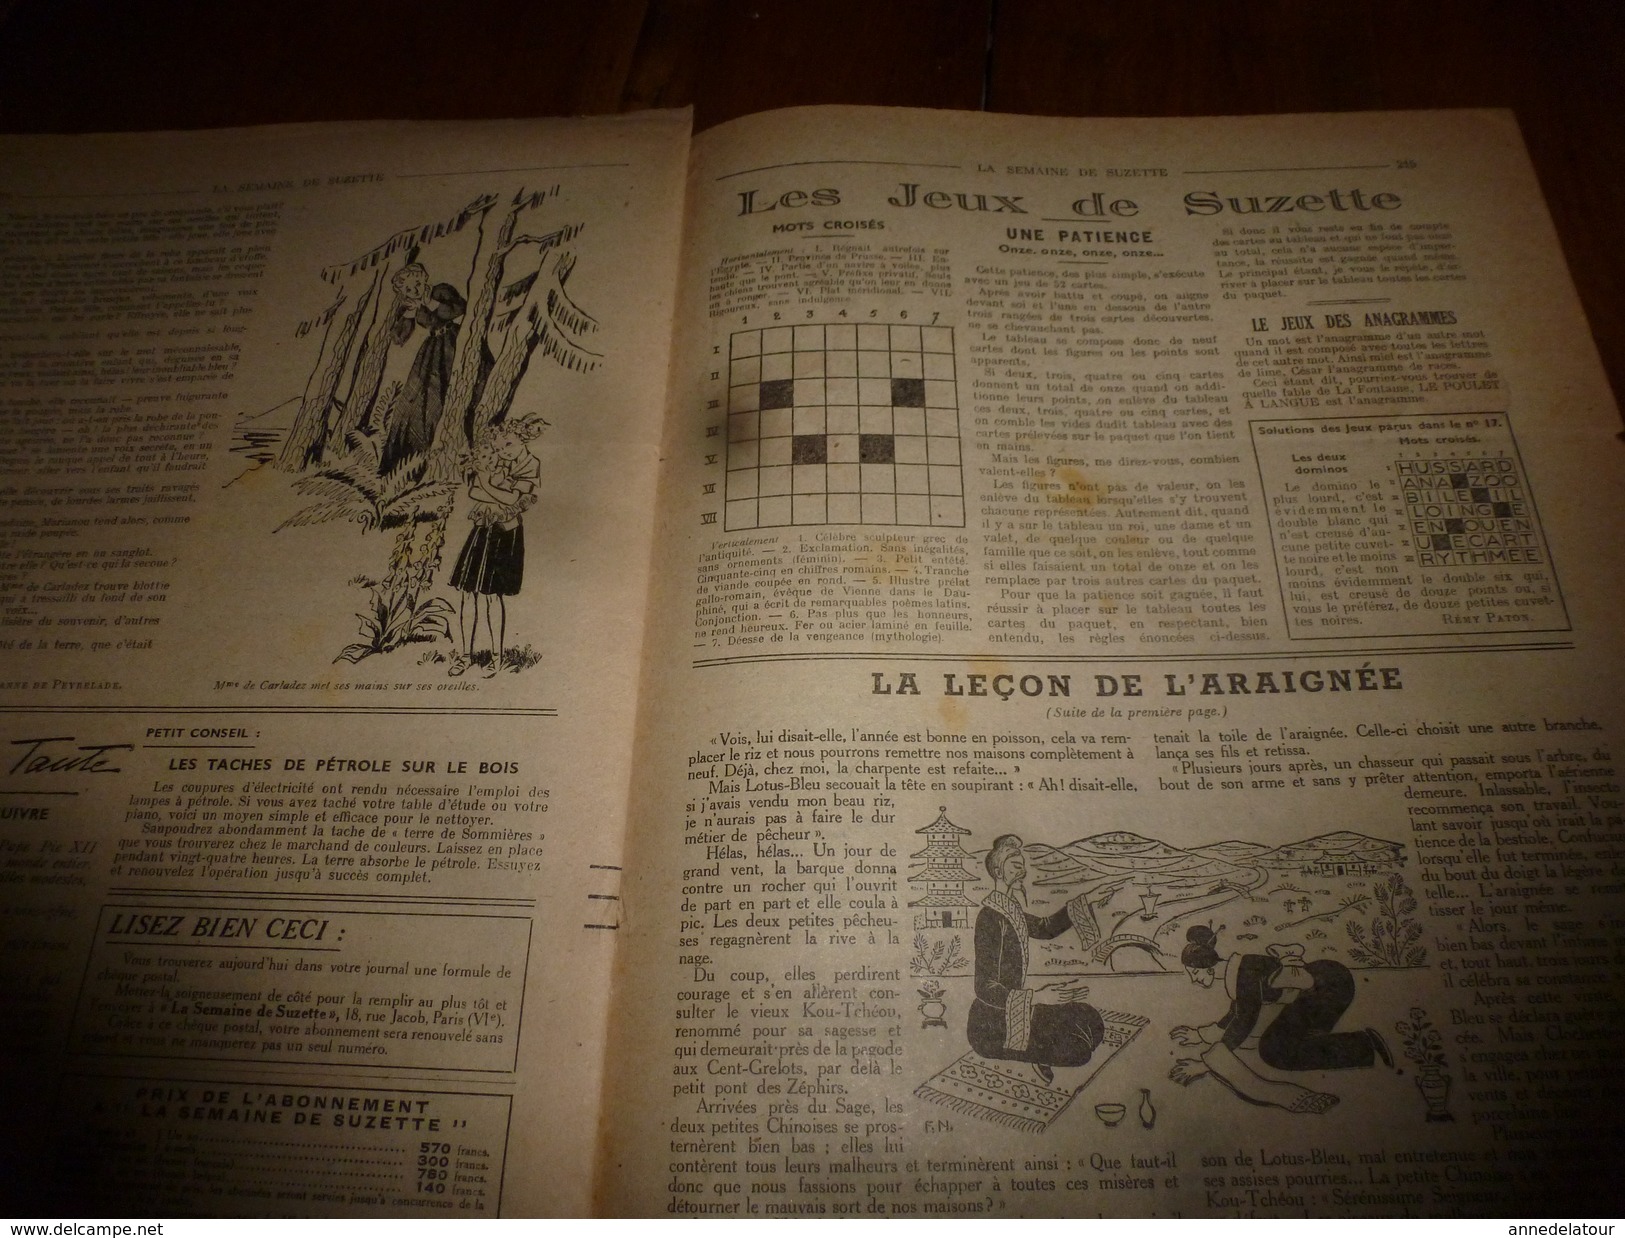 1949 LSDS: La leçon de l'ARAIGNEE ; Les aventures de Jaunet de Zillebeke ; etc